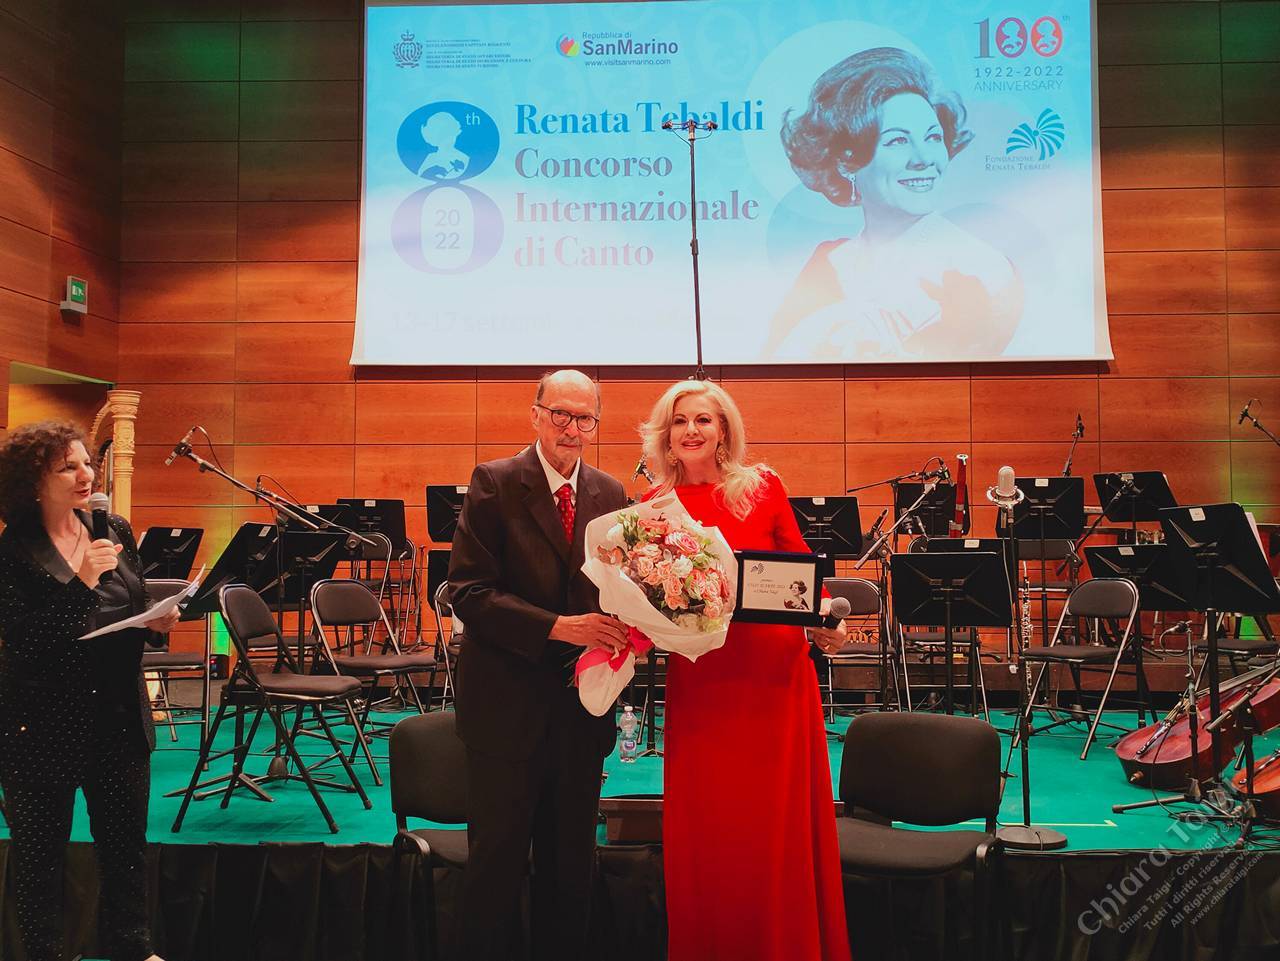 CHIARA TAIGI riceve il Premio Vissi d'Arte - Invitata speciale ed intervista esclusiva al Concorso Internazionale di Canto Renata Tebaldi 2022 nella Città di San Marino